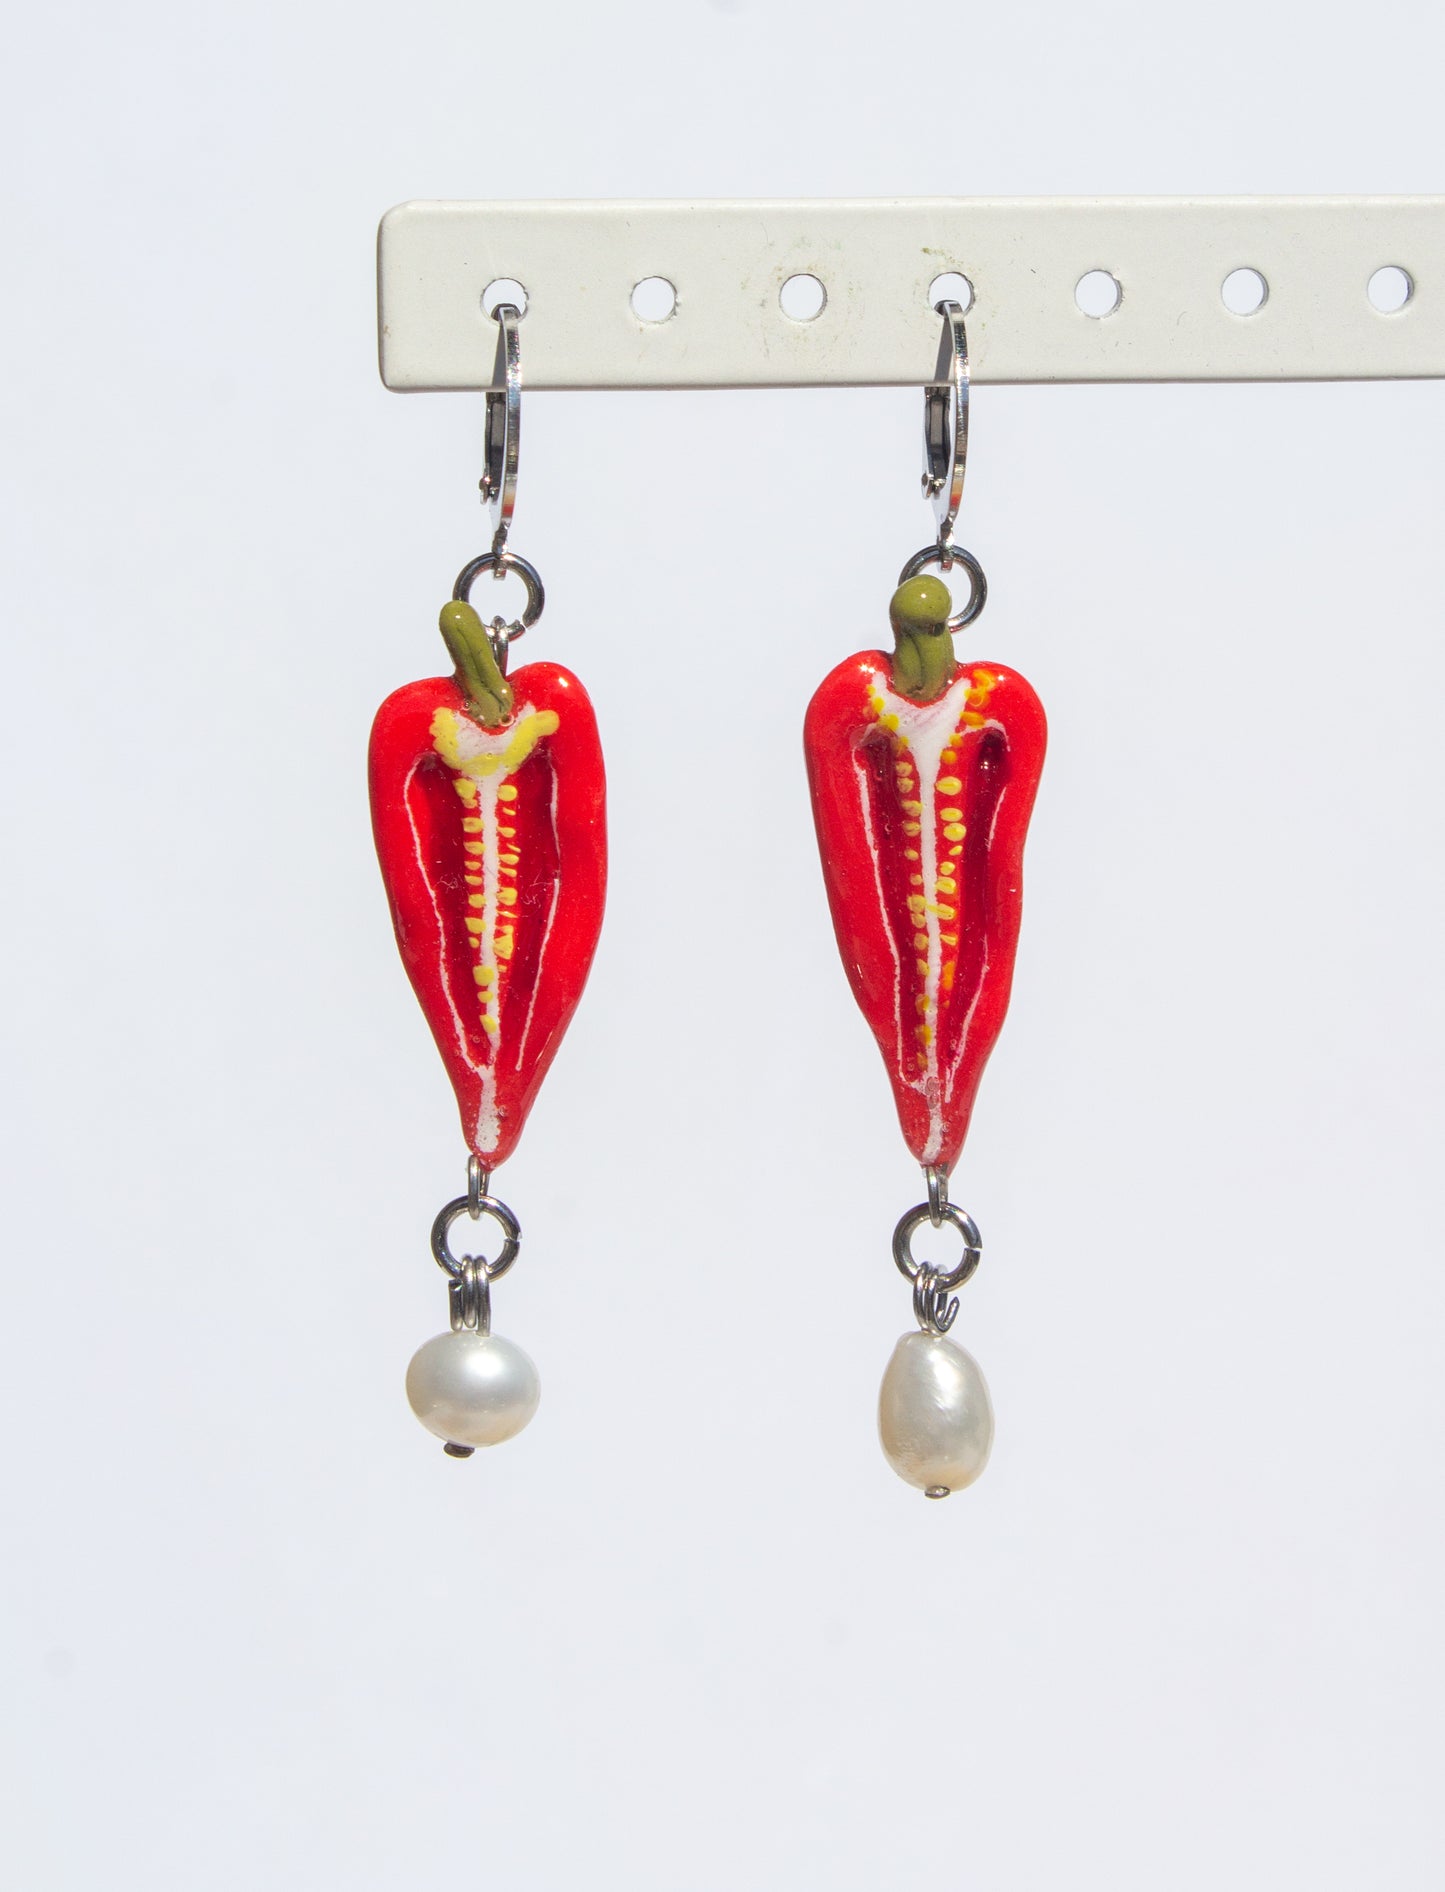 Chilli pepper earrings